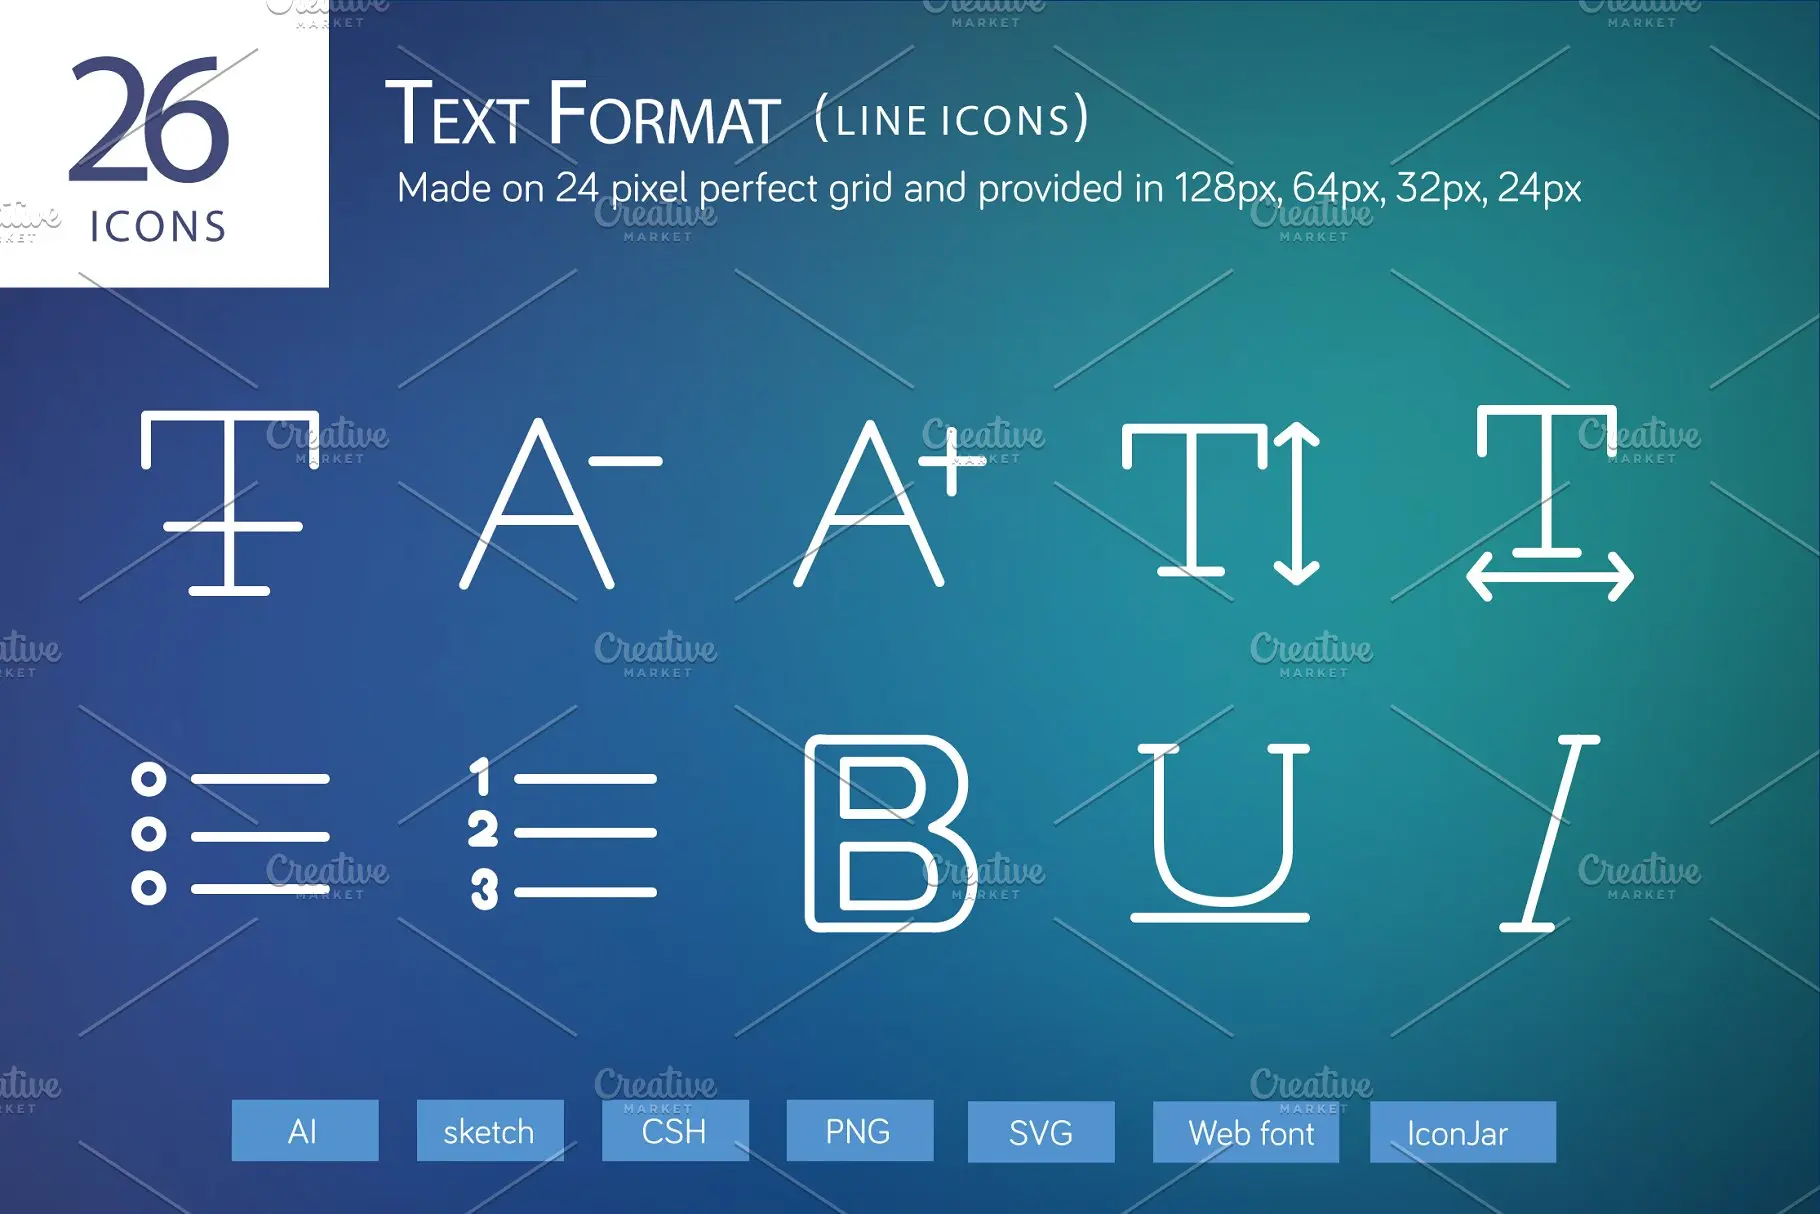 文本格式编辑器图标素材 26 Text Format Line Icons插图